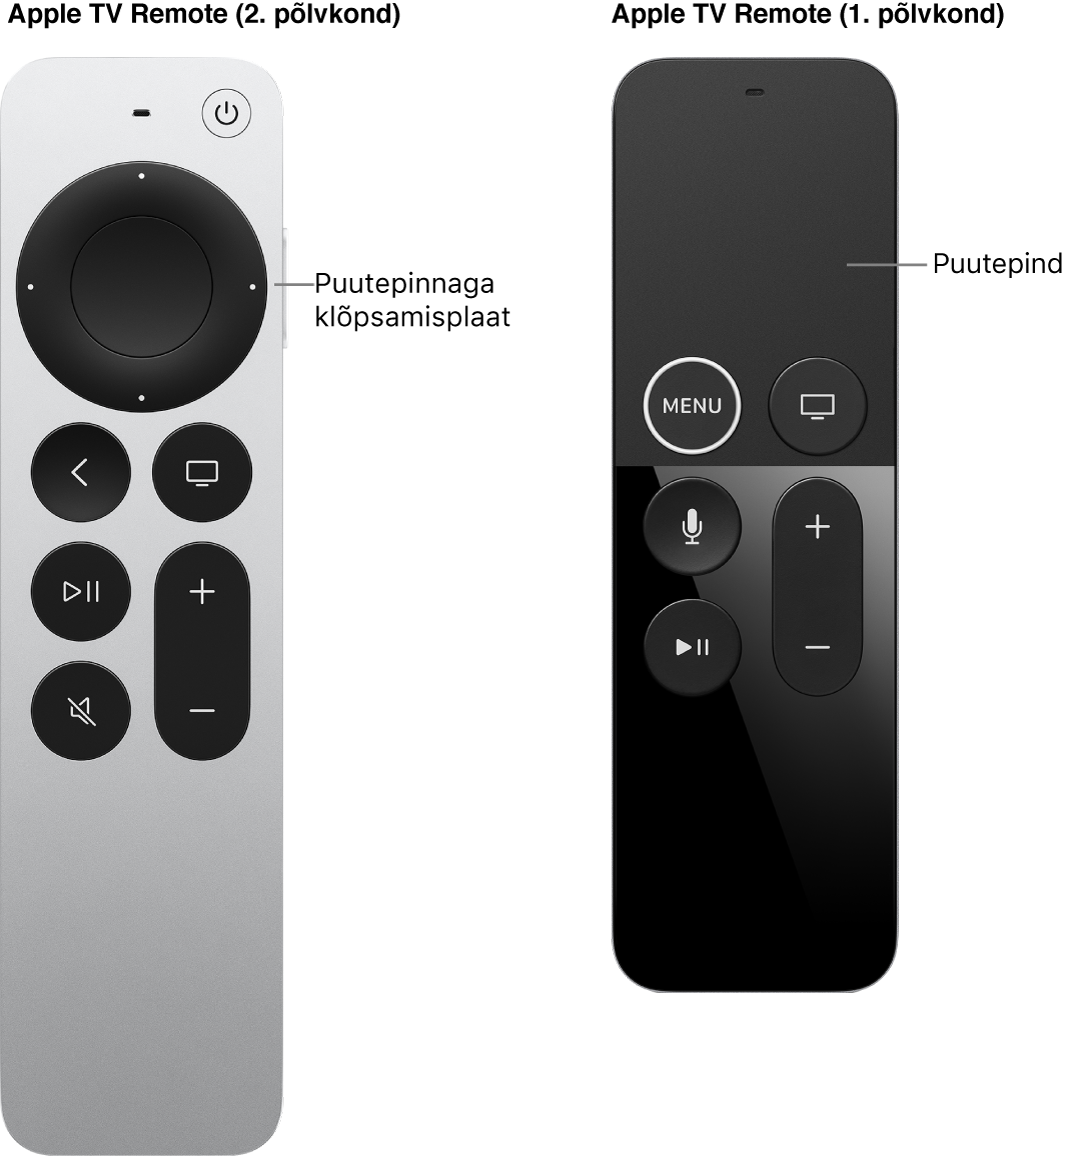 Apple TV Remote (2. ja 3. põlvkond) klõpsamisplaadiga ning Apple TV Remote (1. põlvkond) puutepinnaga.